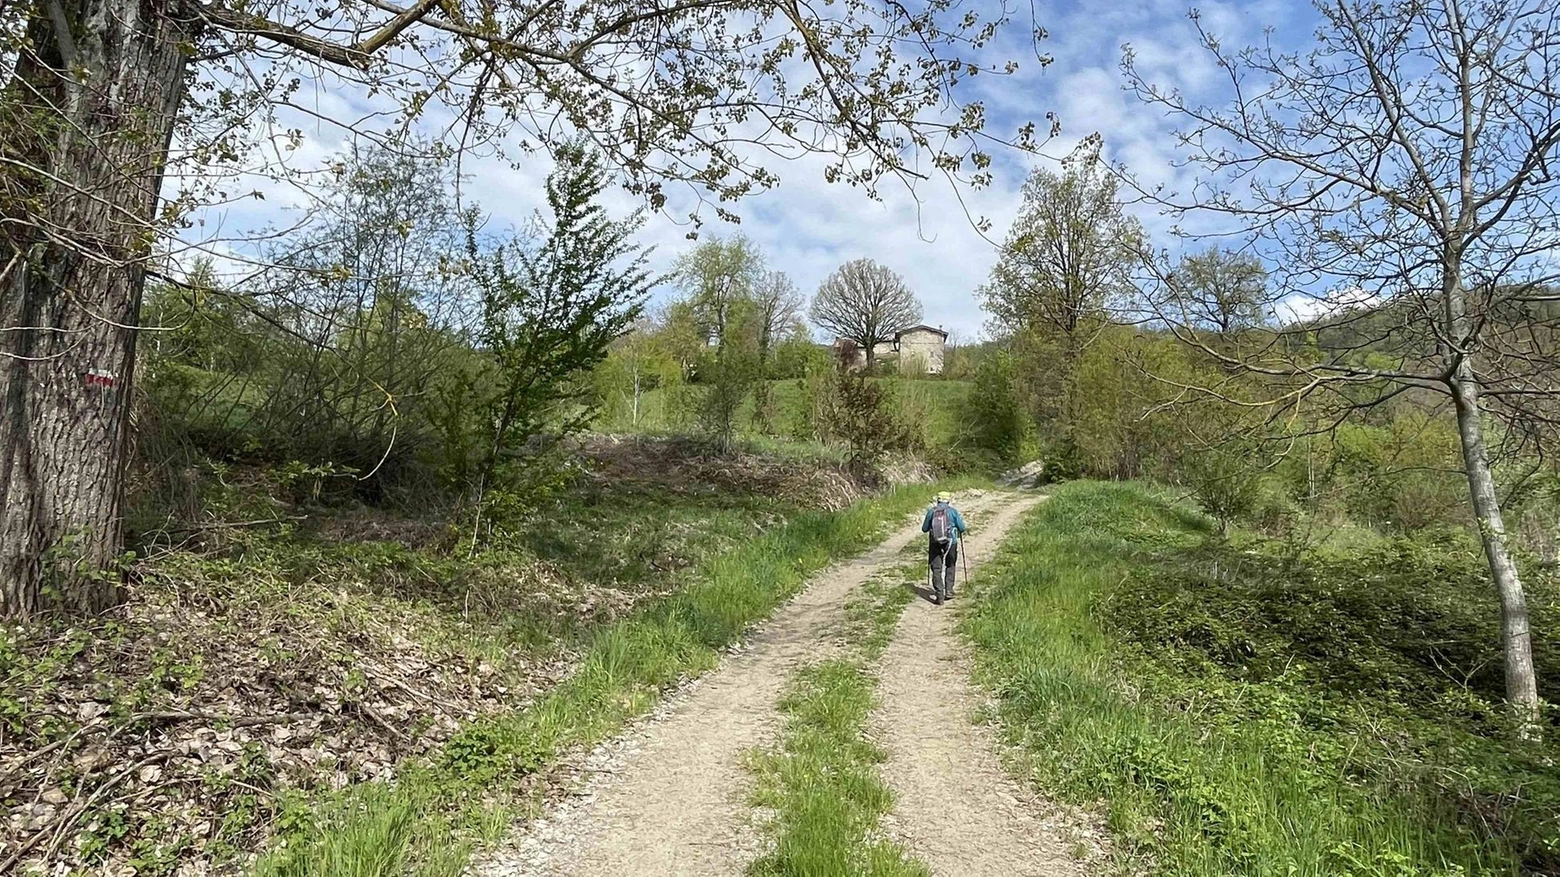 Il Cai di Reggio Emilia organizza un'escursione ad anello di 11 km sui sentieri di Casina, con paesaggi mozzafiato e sosta didattica al "Giardino del Borgo". Equipaggiamento da montagna obbligatorio.